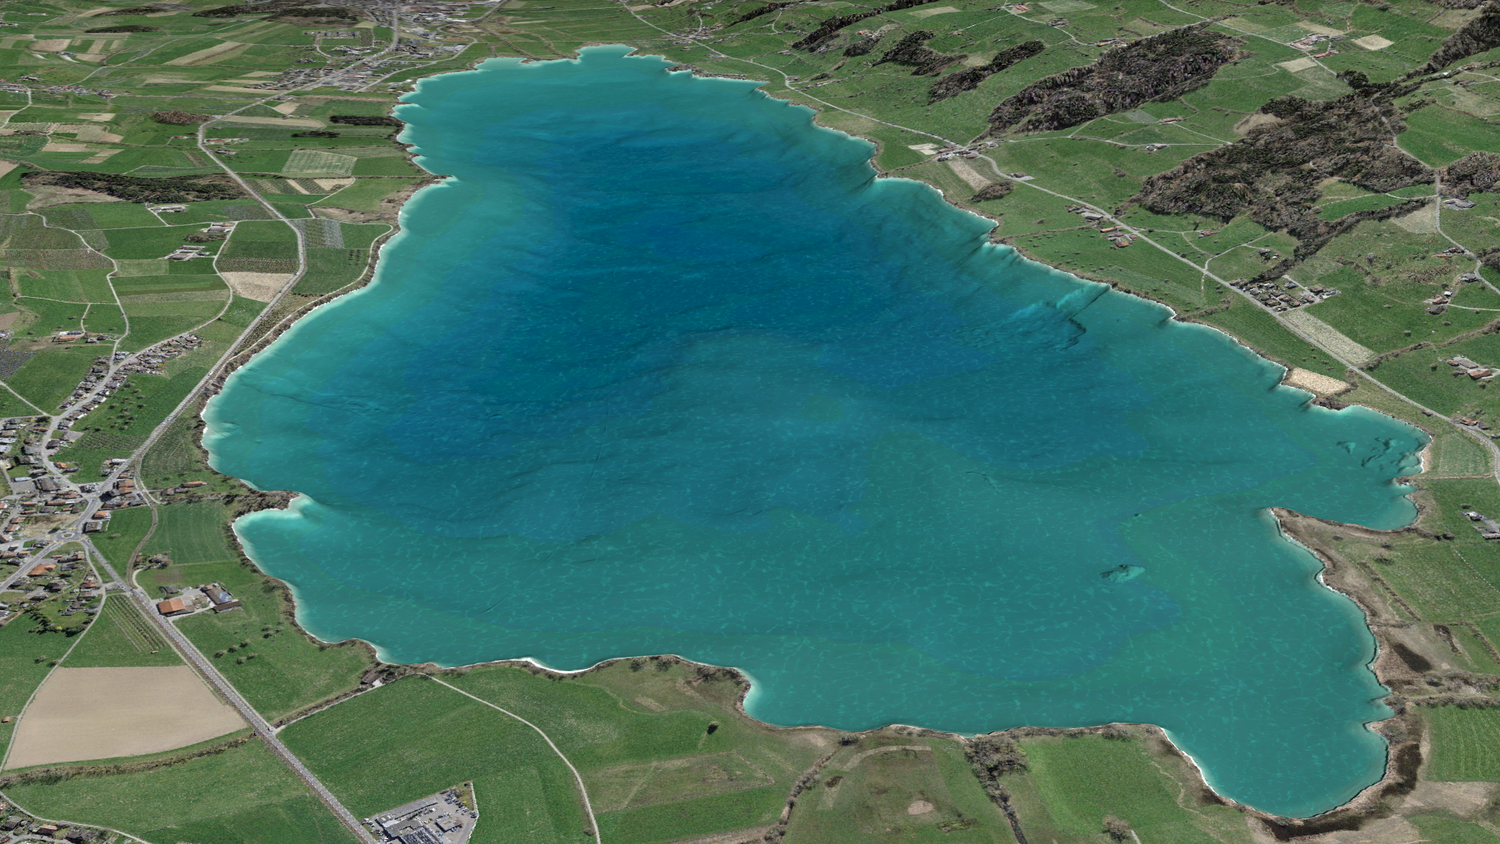 L'immagine mostra il fondo del lago Baldegg sotto forma di ombreggiatura di rilievo